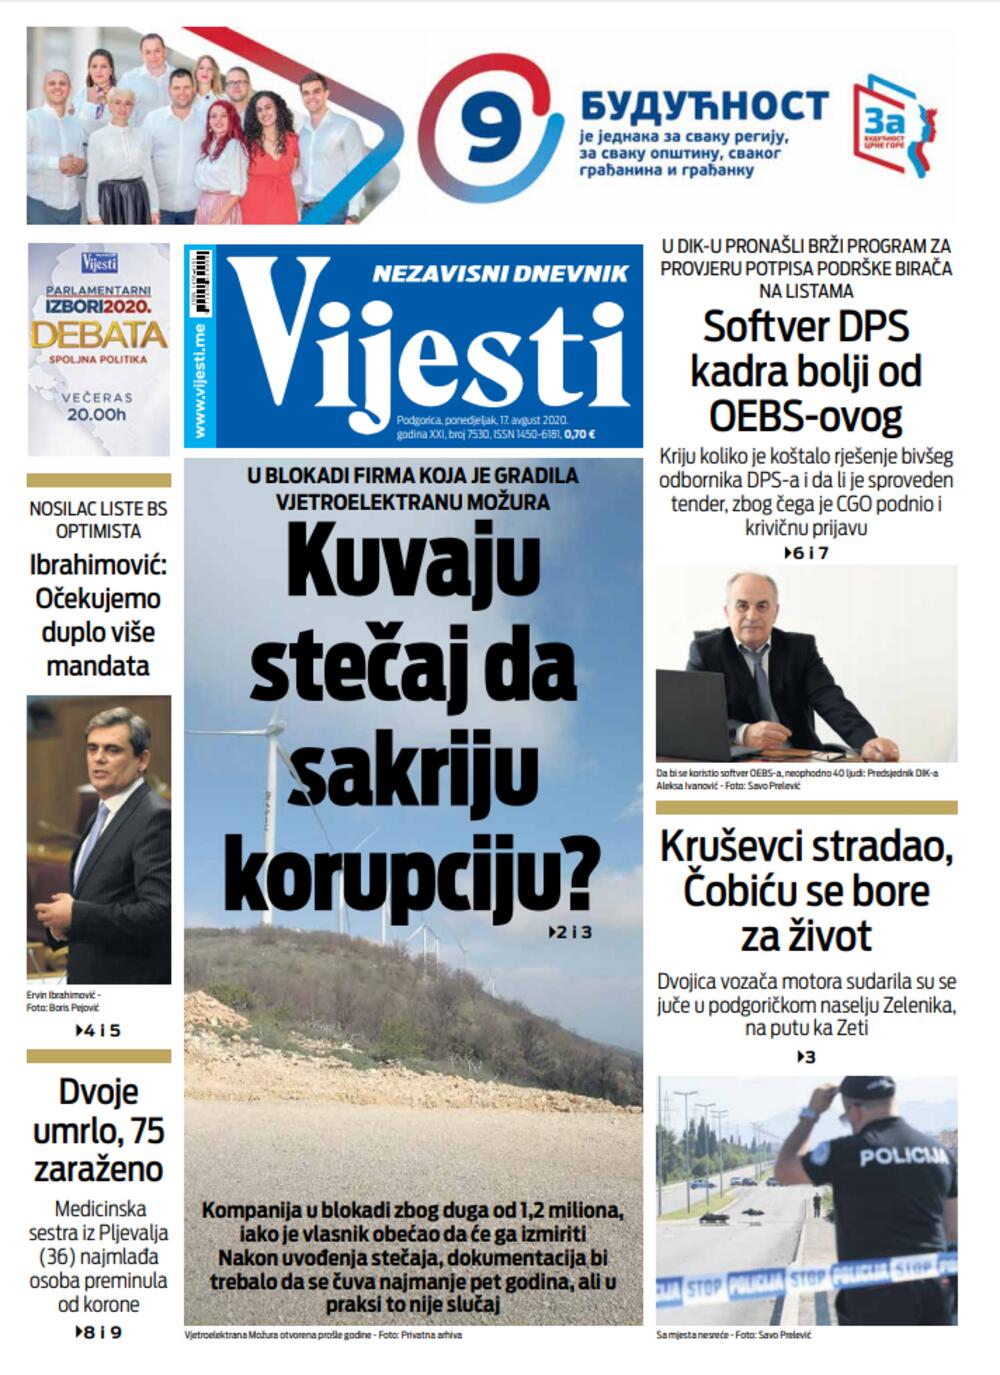 Naslovna strana "Vijesti" za 17. avgust, Foto: Vijesti